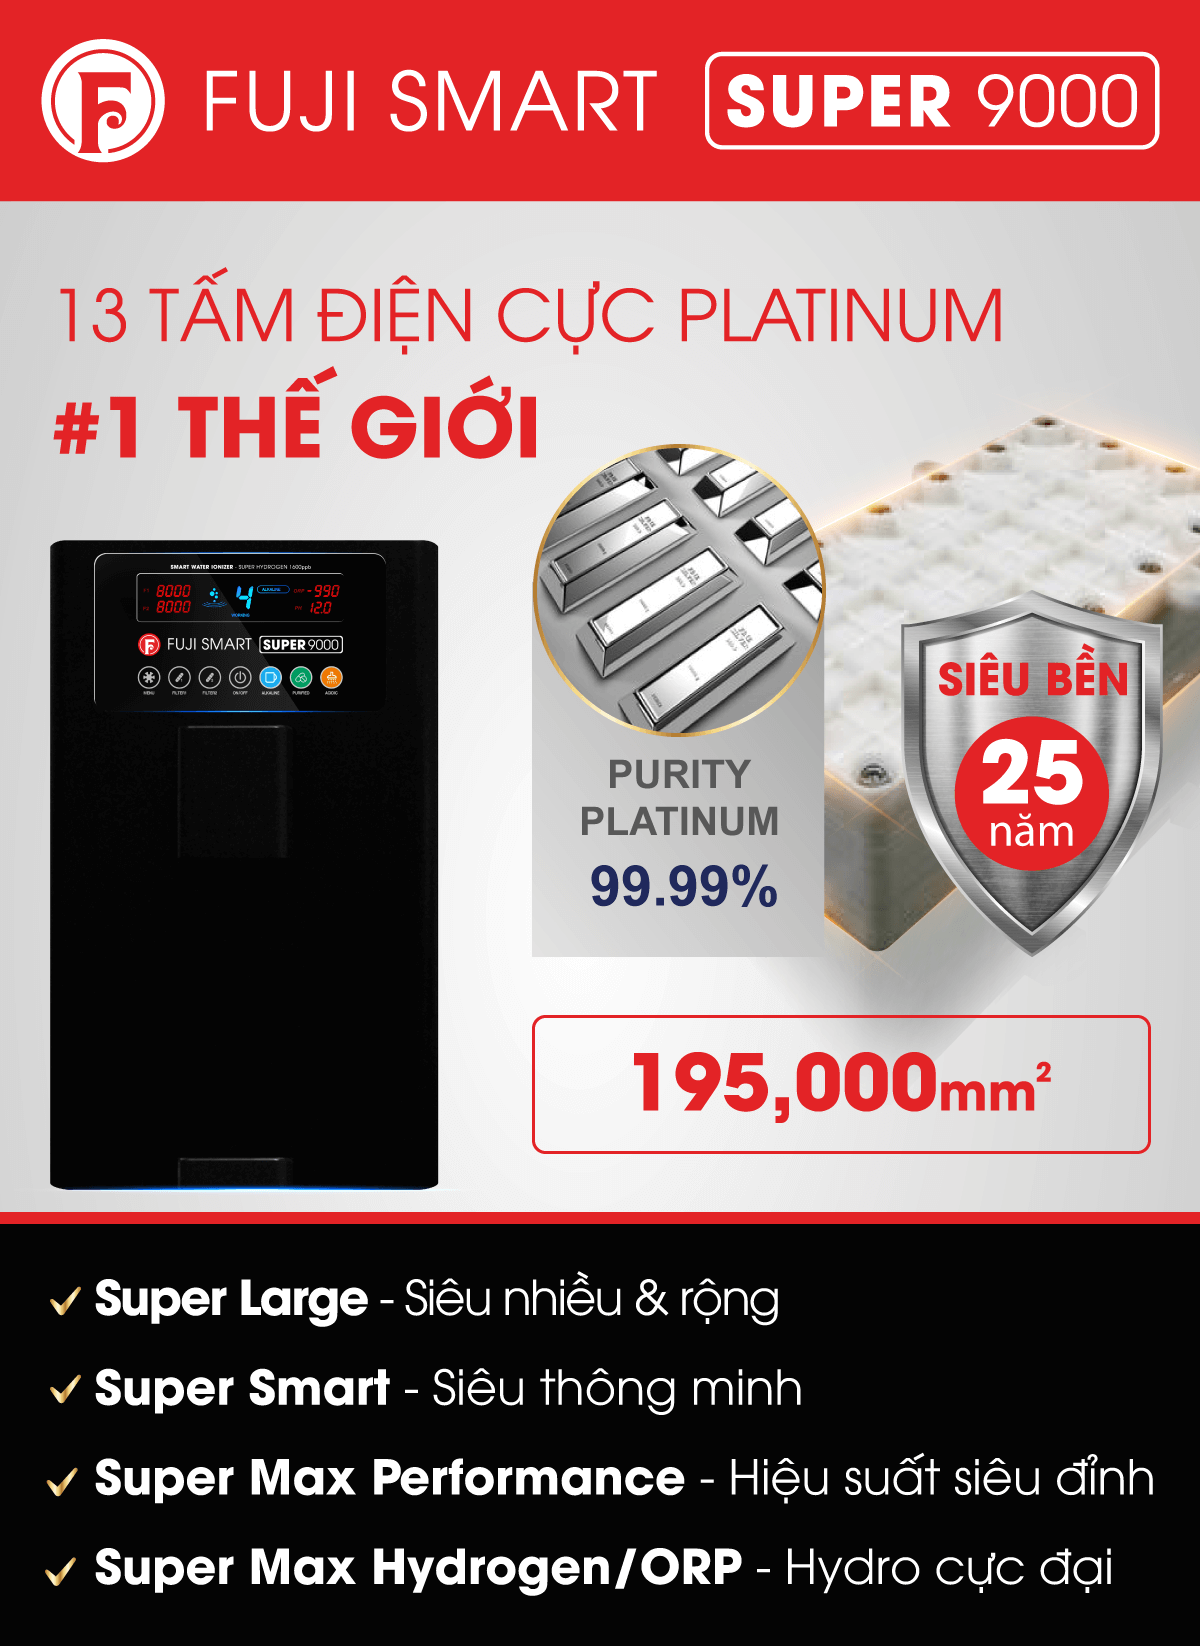 Fuji Smart Super 9000 sở hữu nhiều tấm điện cực nhất từ Platinum siêu bền và siêu rộng